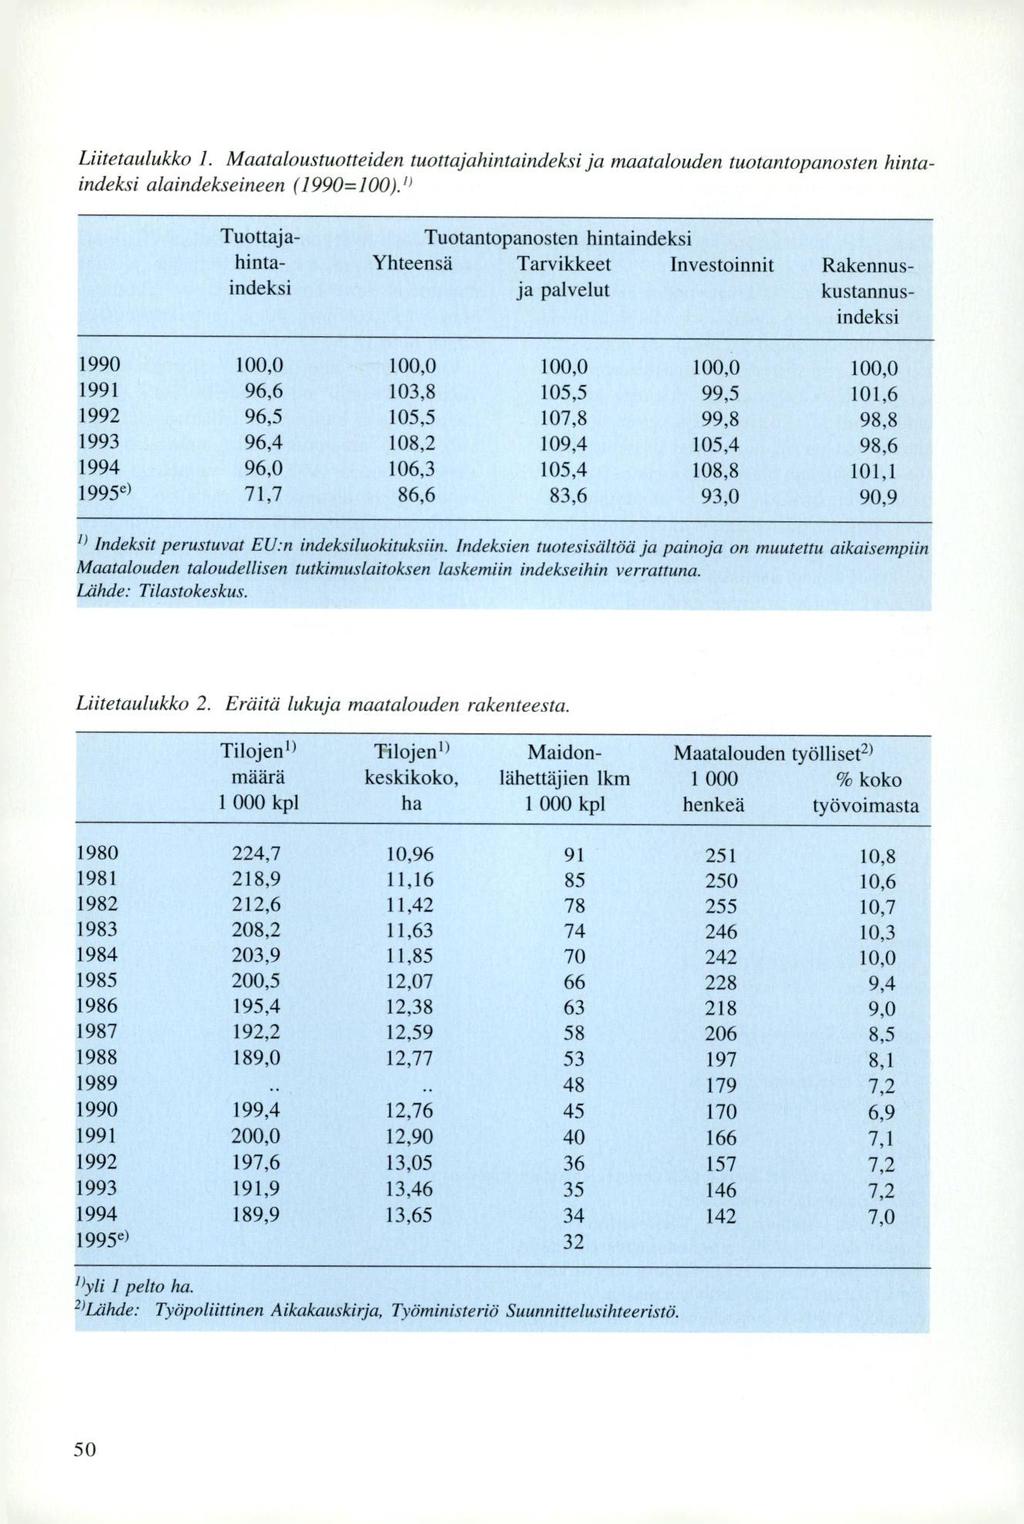 Liitetaulukko 1. Maataloustuotteiden tuottajahintaindeksi ja maatalouden tuotantopanosten hintaindeksi alaindekseineen (1990=100).